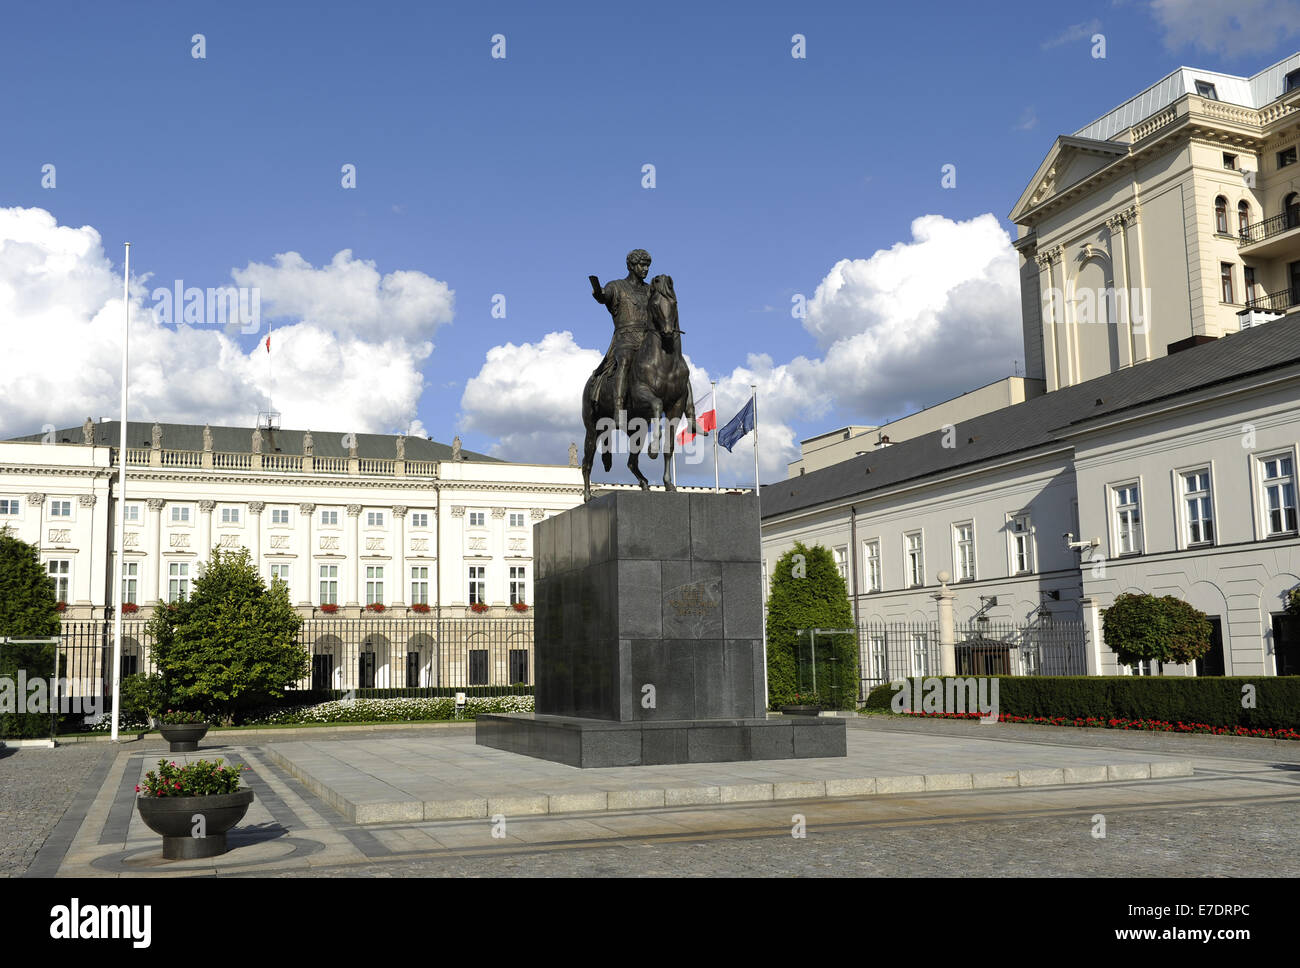 Polonia. Varsovia. Palacio presidencial por Chrystian Piotr Aigner y estatua ecuestre del príncipe Jozef Poniatowski (1763-1813). Foto de stock